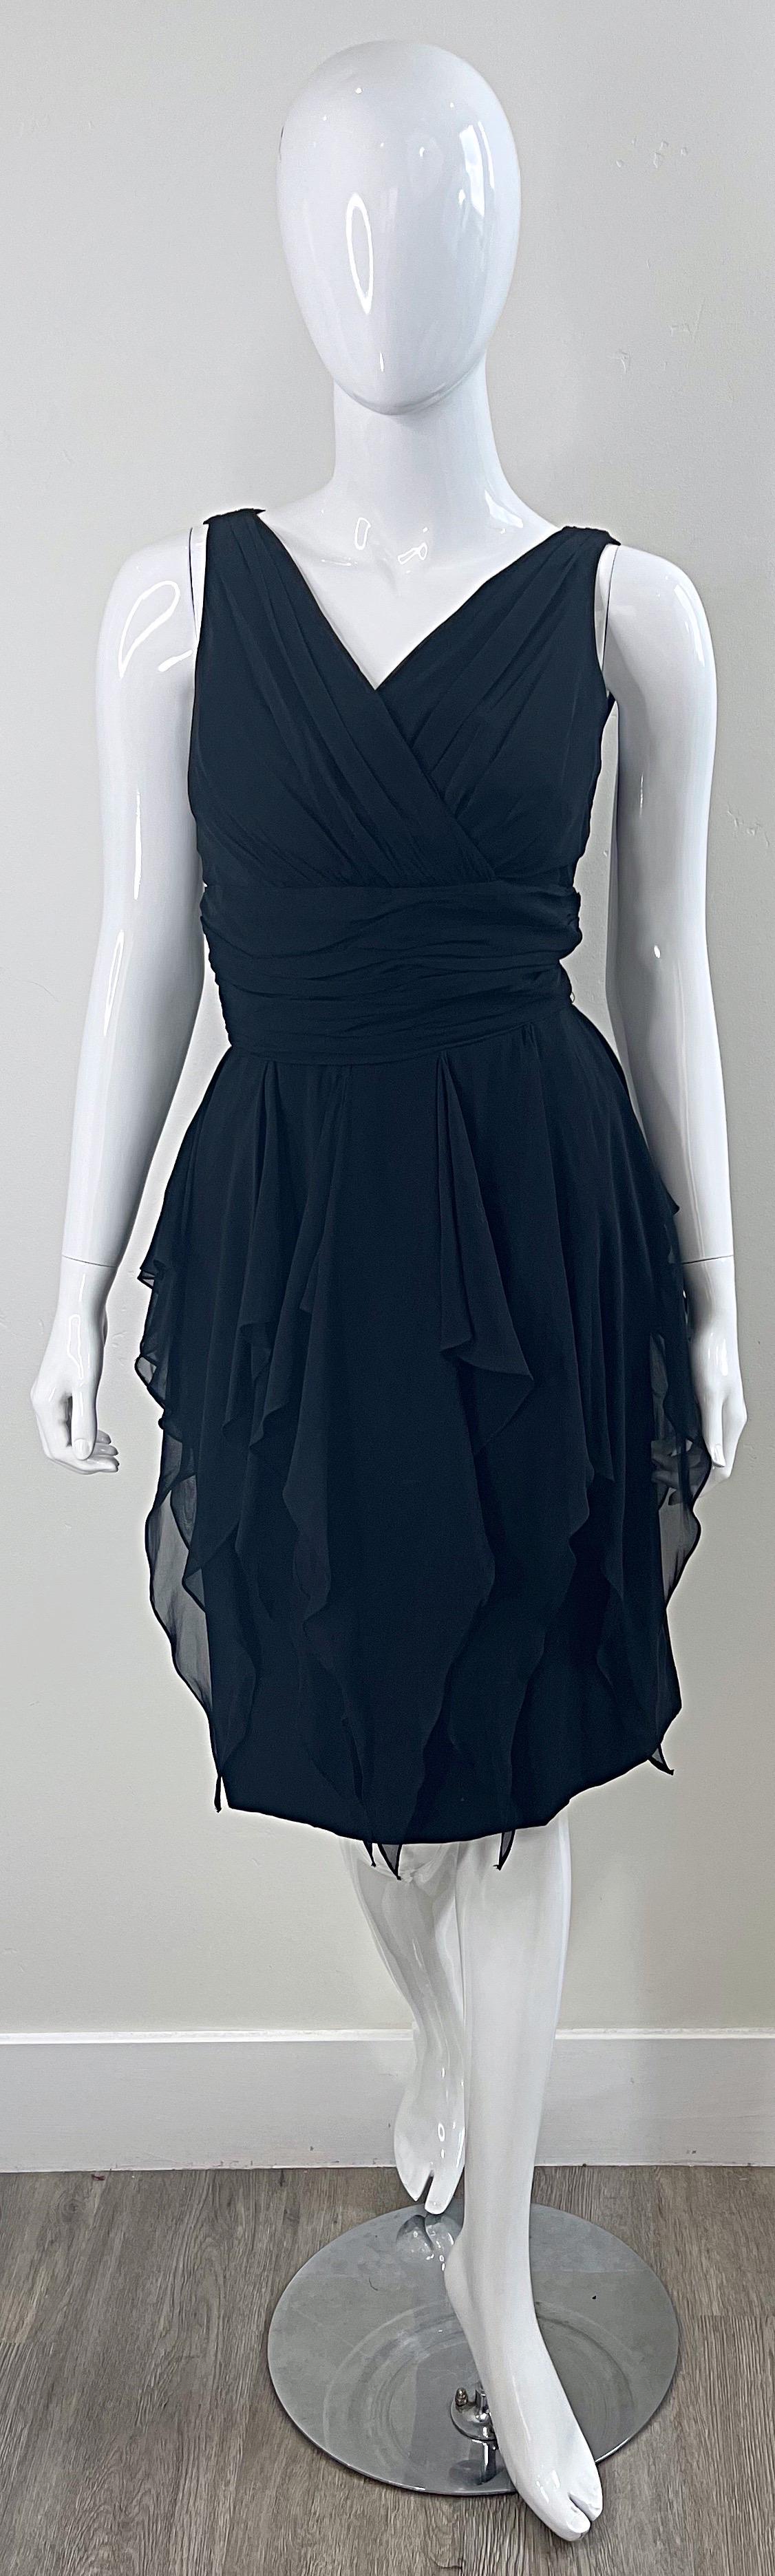 Wunderschönes und klassisches 1950er Demi Couture Taschentuch Kleid aus Chiffon ! Mit schmeichelhaftem, tailliertem Mieder und einem Rock mit Einsätzen, die auf und in der Bewegung toll aussehen. Verdeckter Metallreißverschluss auf der Rückseite mit